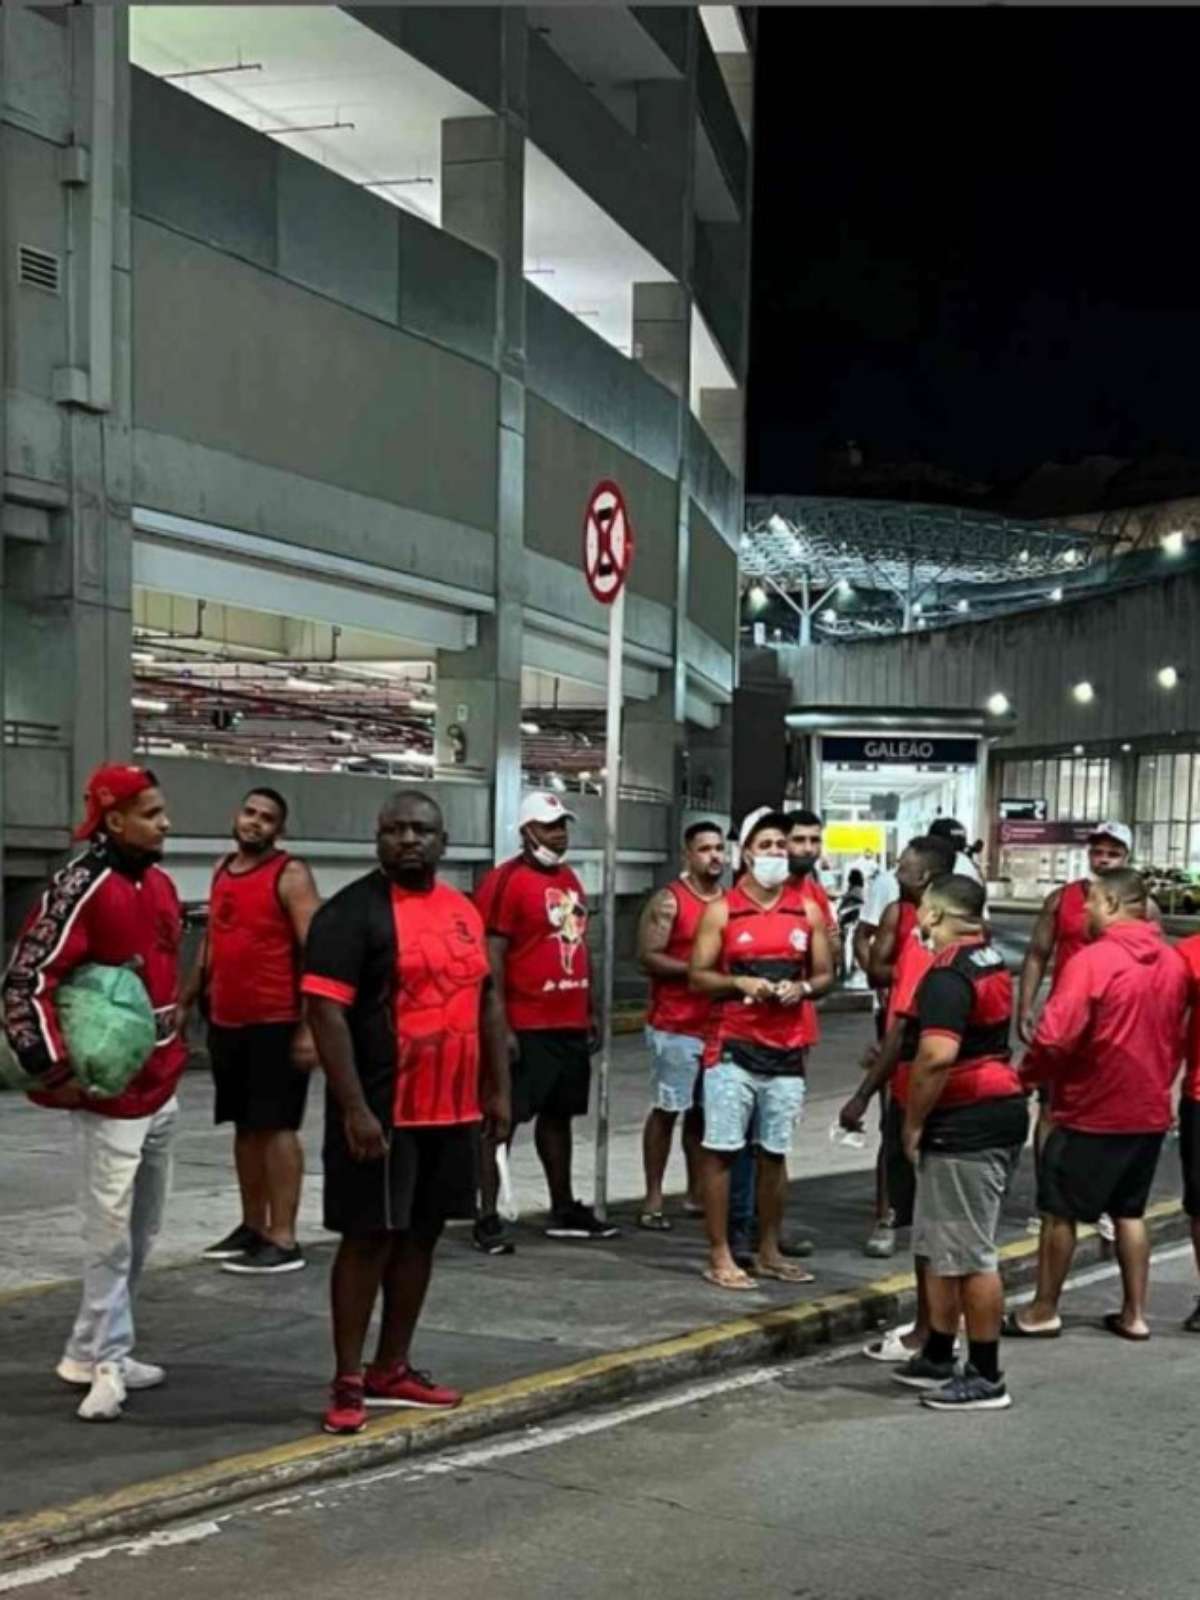 Alvo da torcida do Flamengo após derrota para o Grêmio, Isla